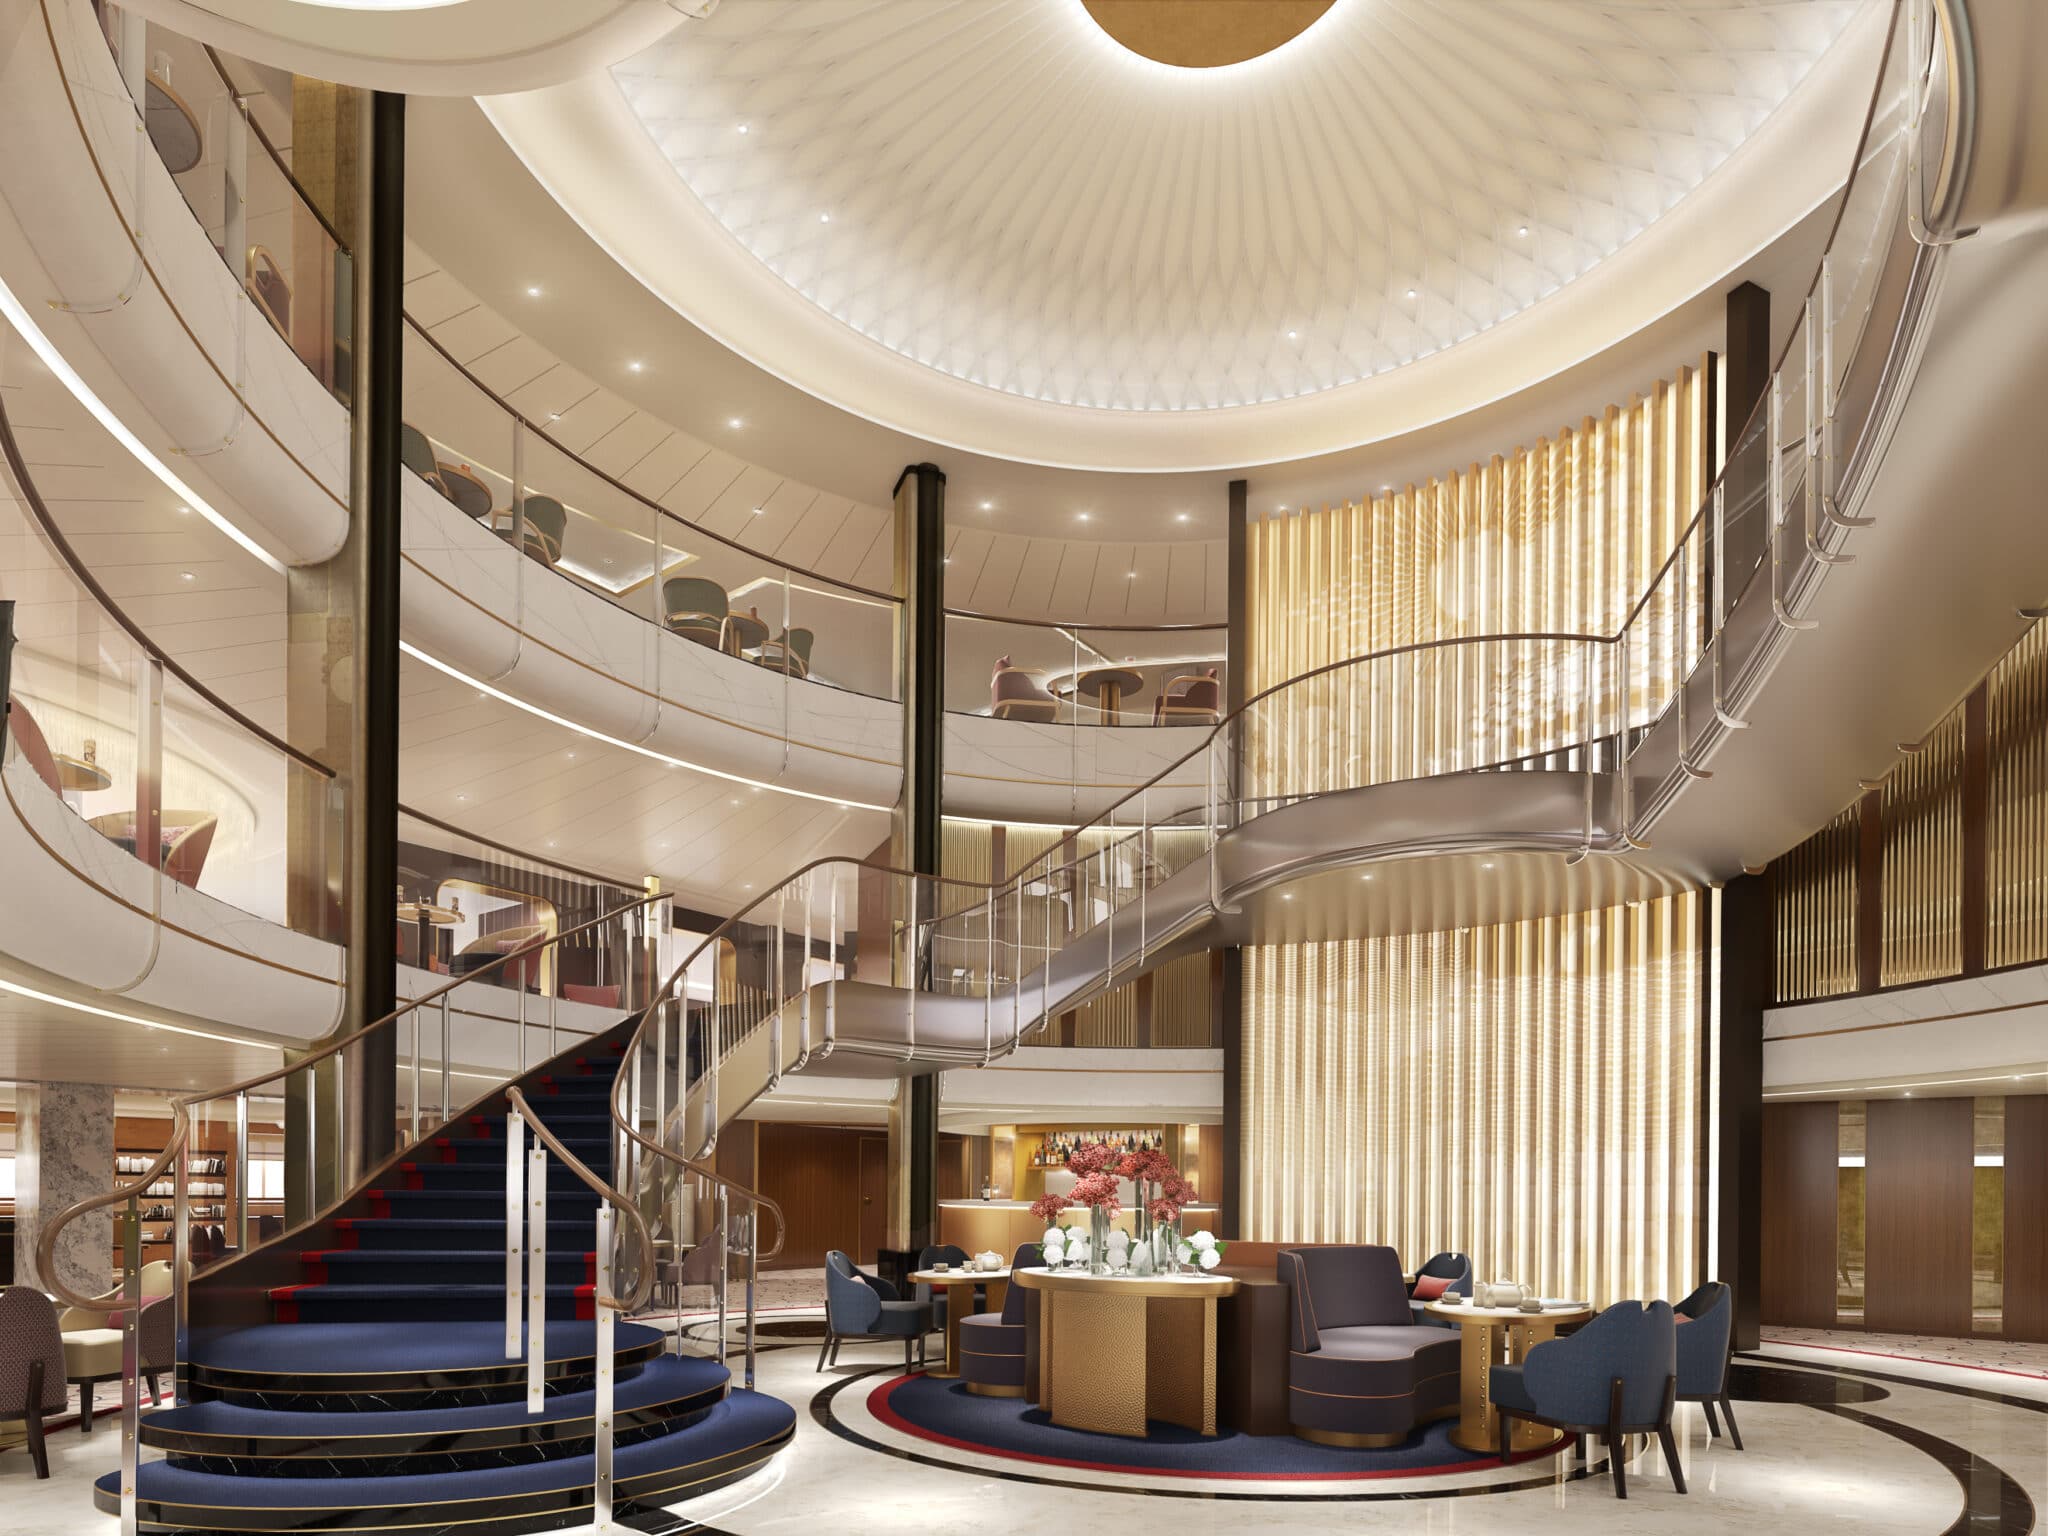 Die Grand Lobby, ein zentraler Punkt fÃ¼r die GÃ¤ste und das HerzstÃ¼ck des Schiffes, wurde so gestaltet, dass sie einen eindrucksvollen Eingangsbereich bietet. Foto: Â© Cunard Line